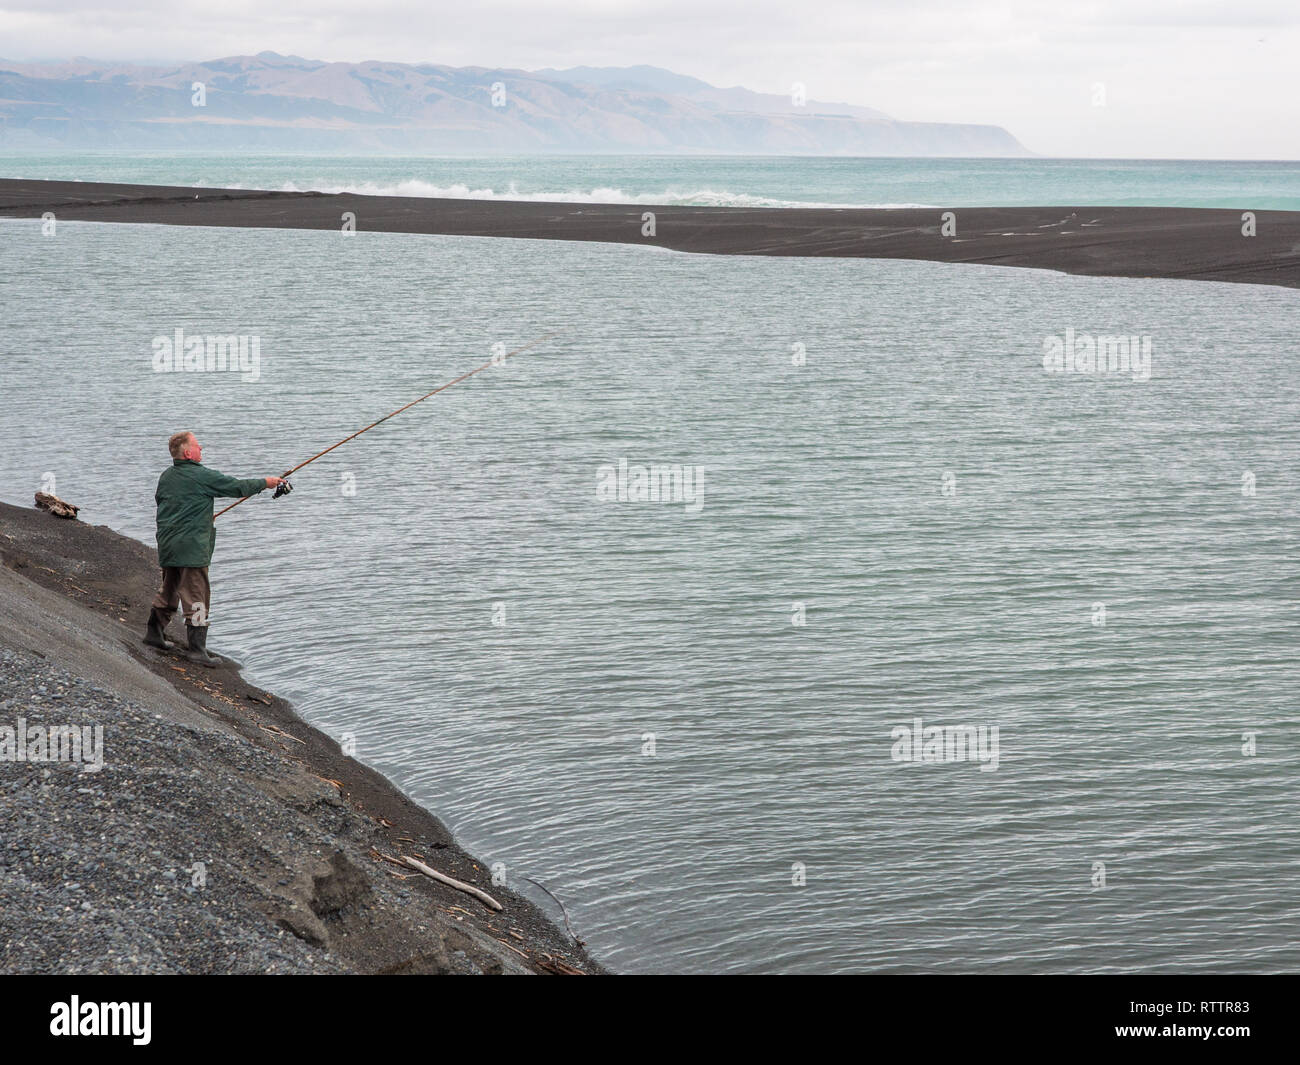 Fisherman with fishing rod, casting line, Lake Ferry, Palliser Bay, Wairarapa, New Zealand Stock Photo